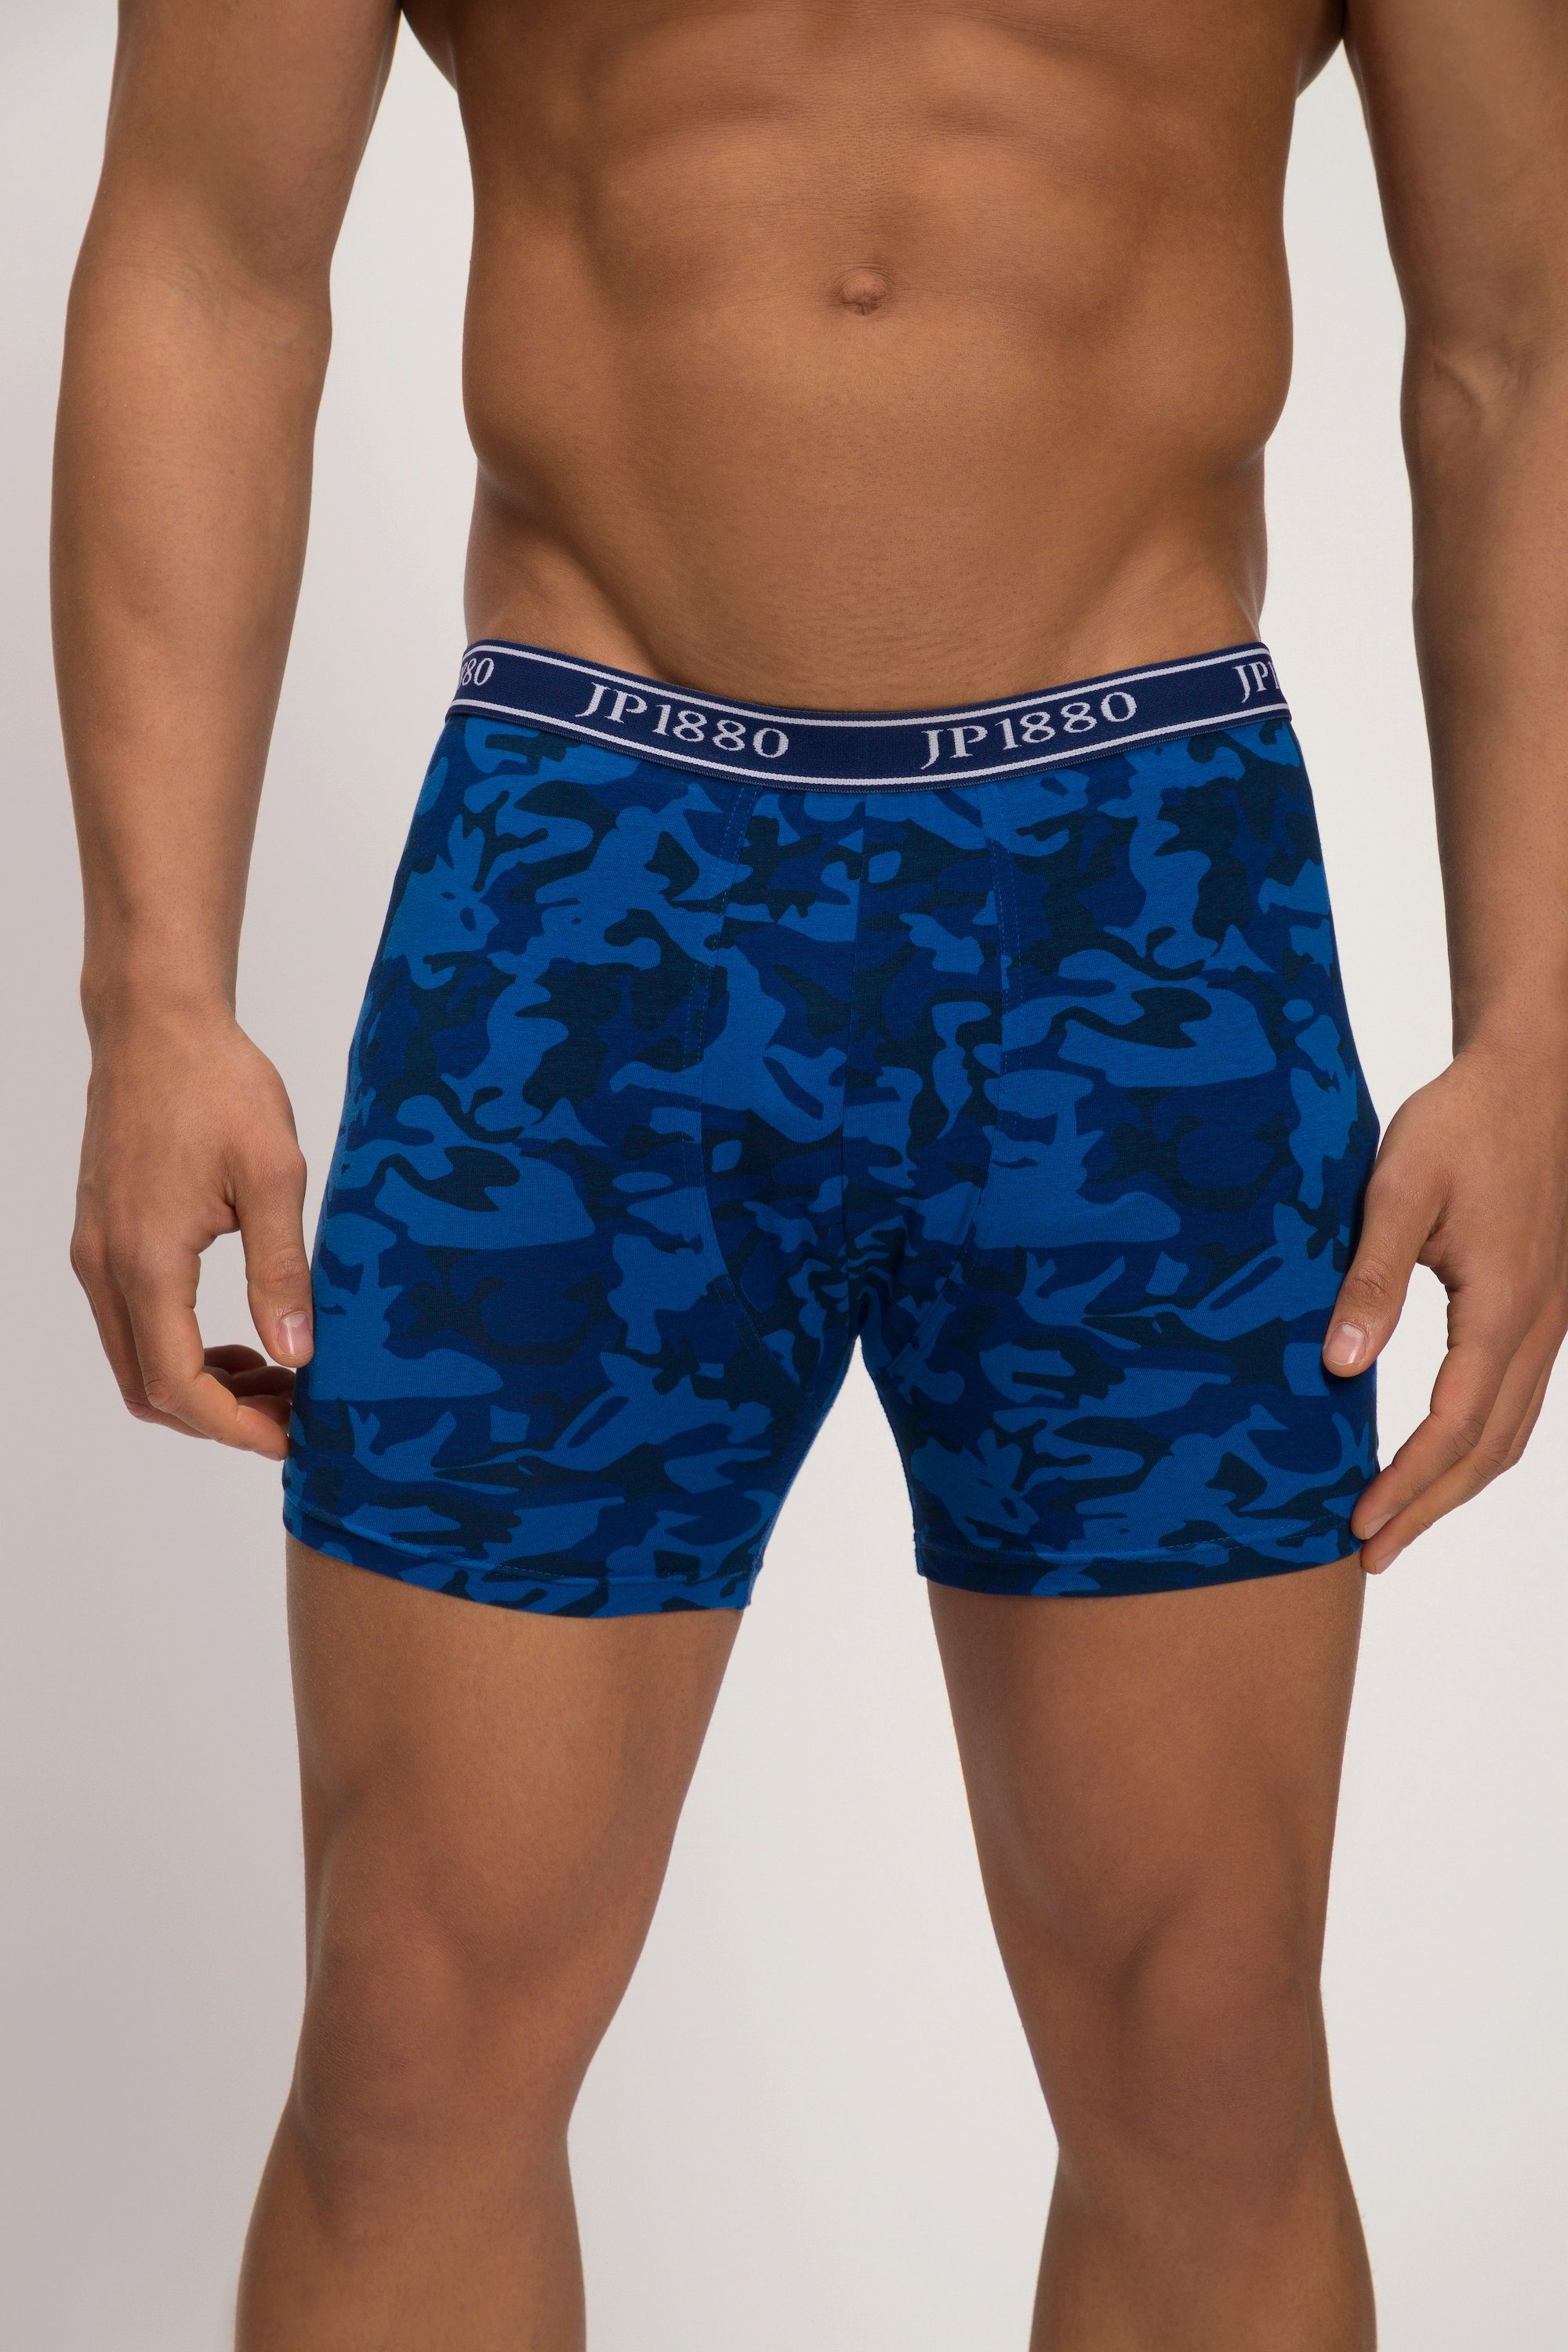 Camouflage Midpants Boxershorts Unterhose FLEXNAMIC® indigo JP1880